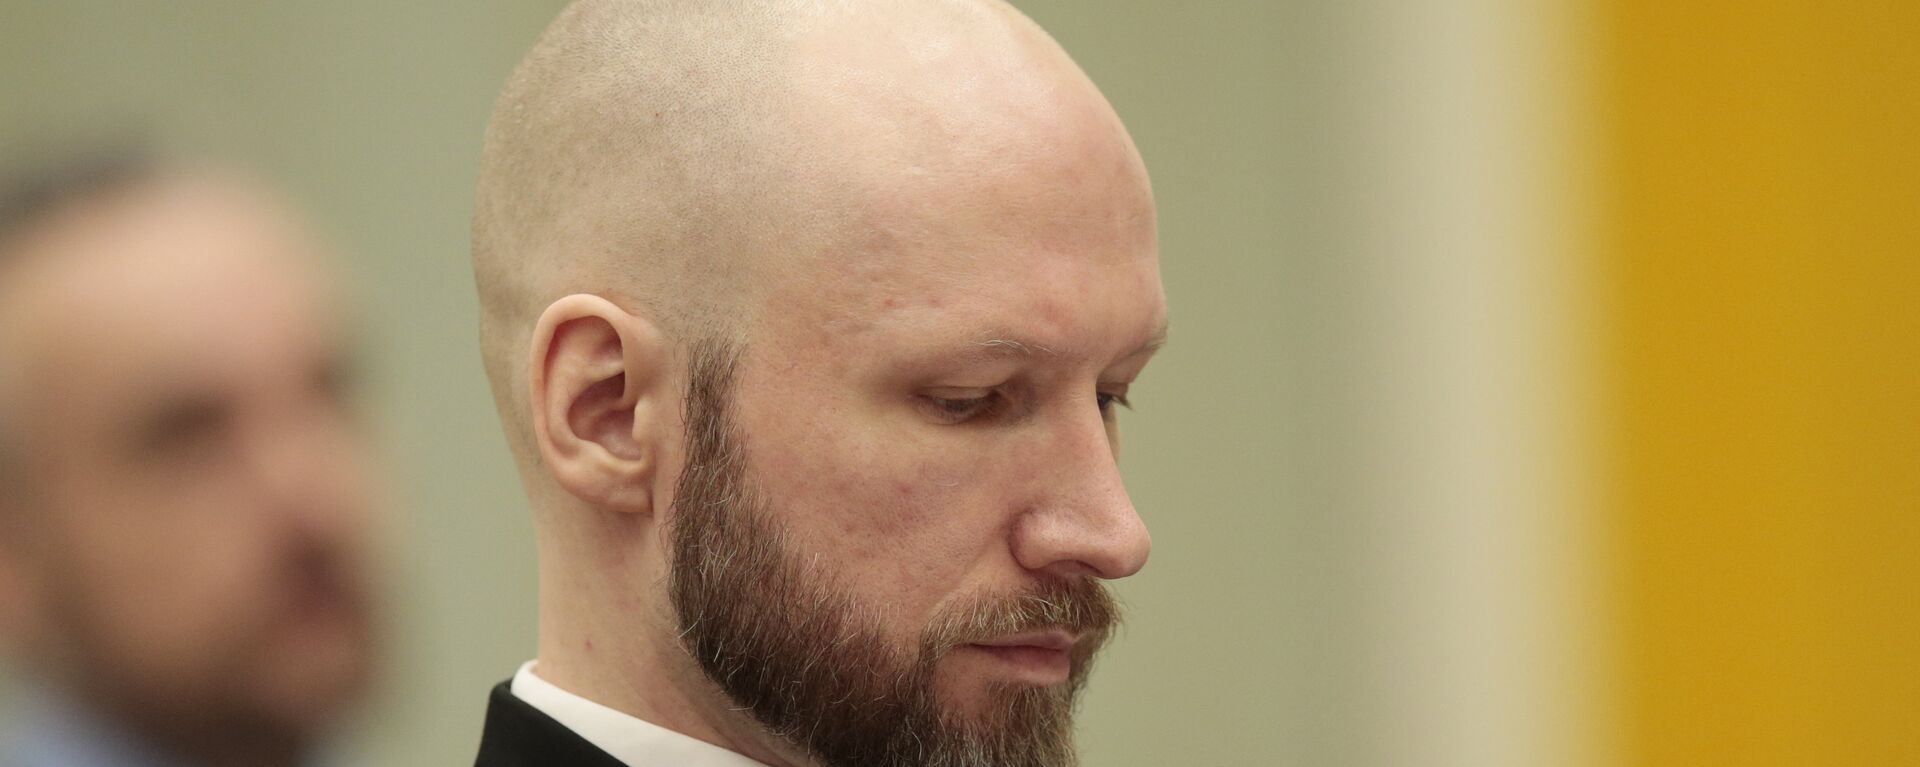 Anders Breivik - Sputnik Türkiye, 1920, 21.06.2018